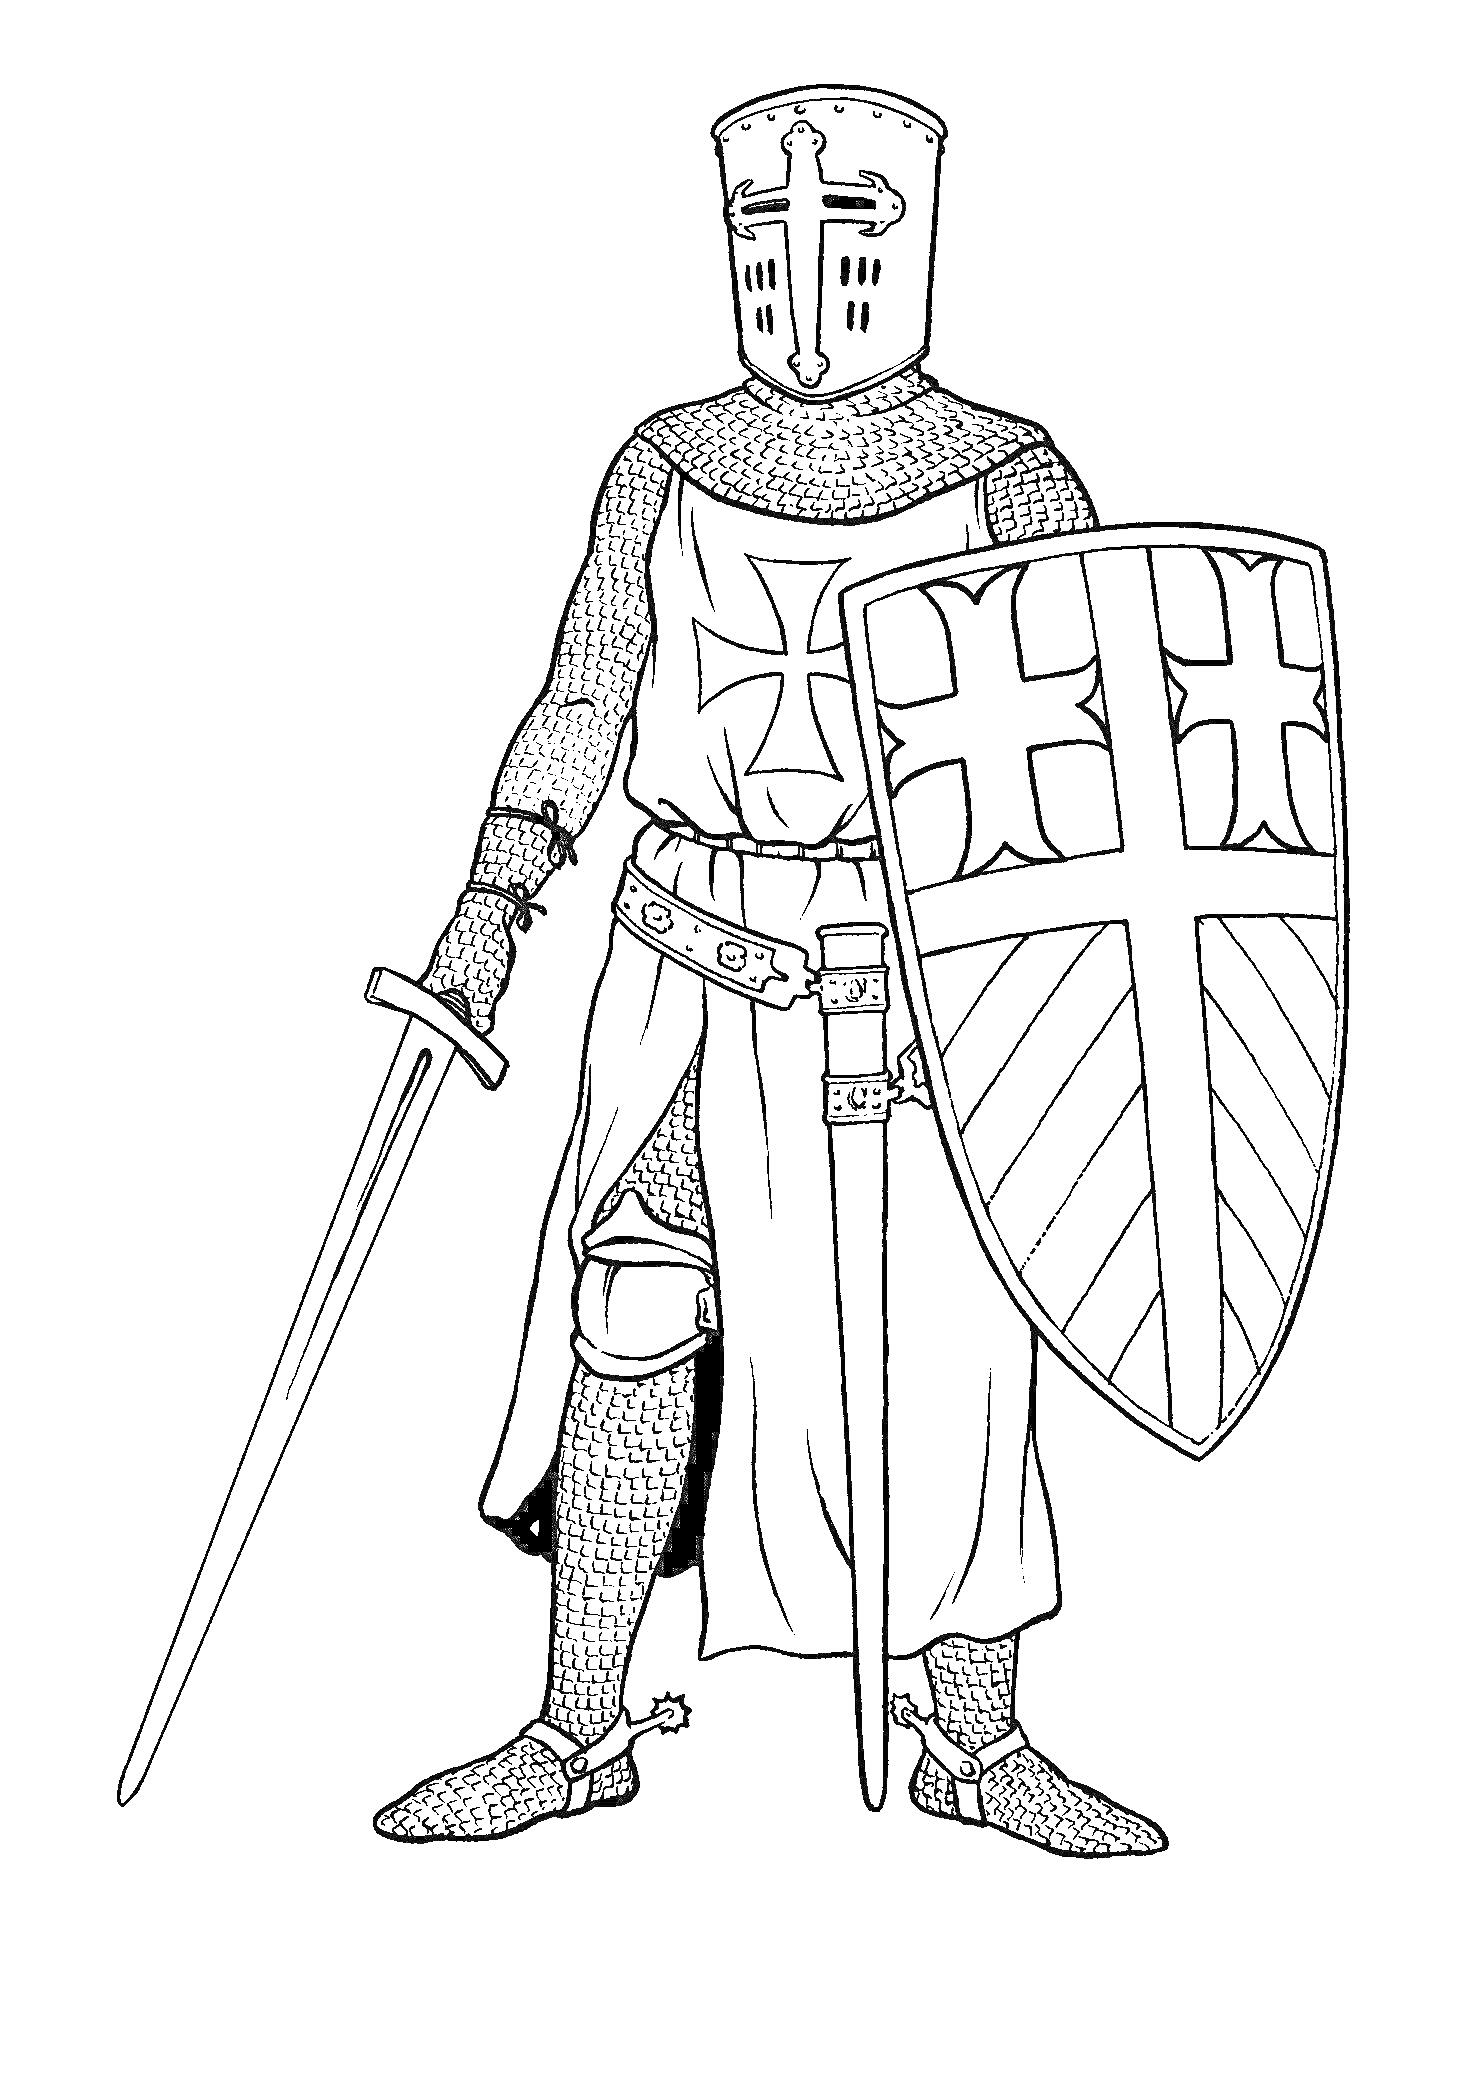 Рыцарь с мечом и щитом, с крестом на броне и шлеме